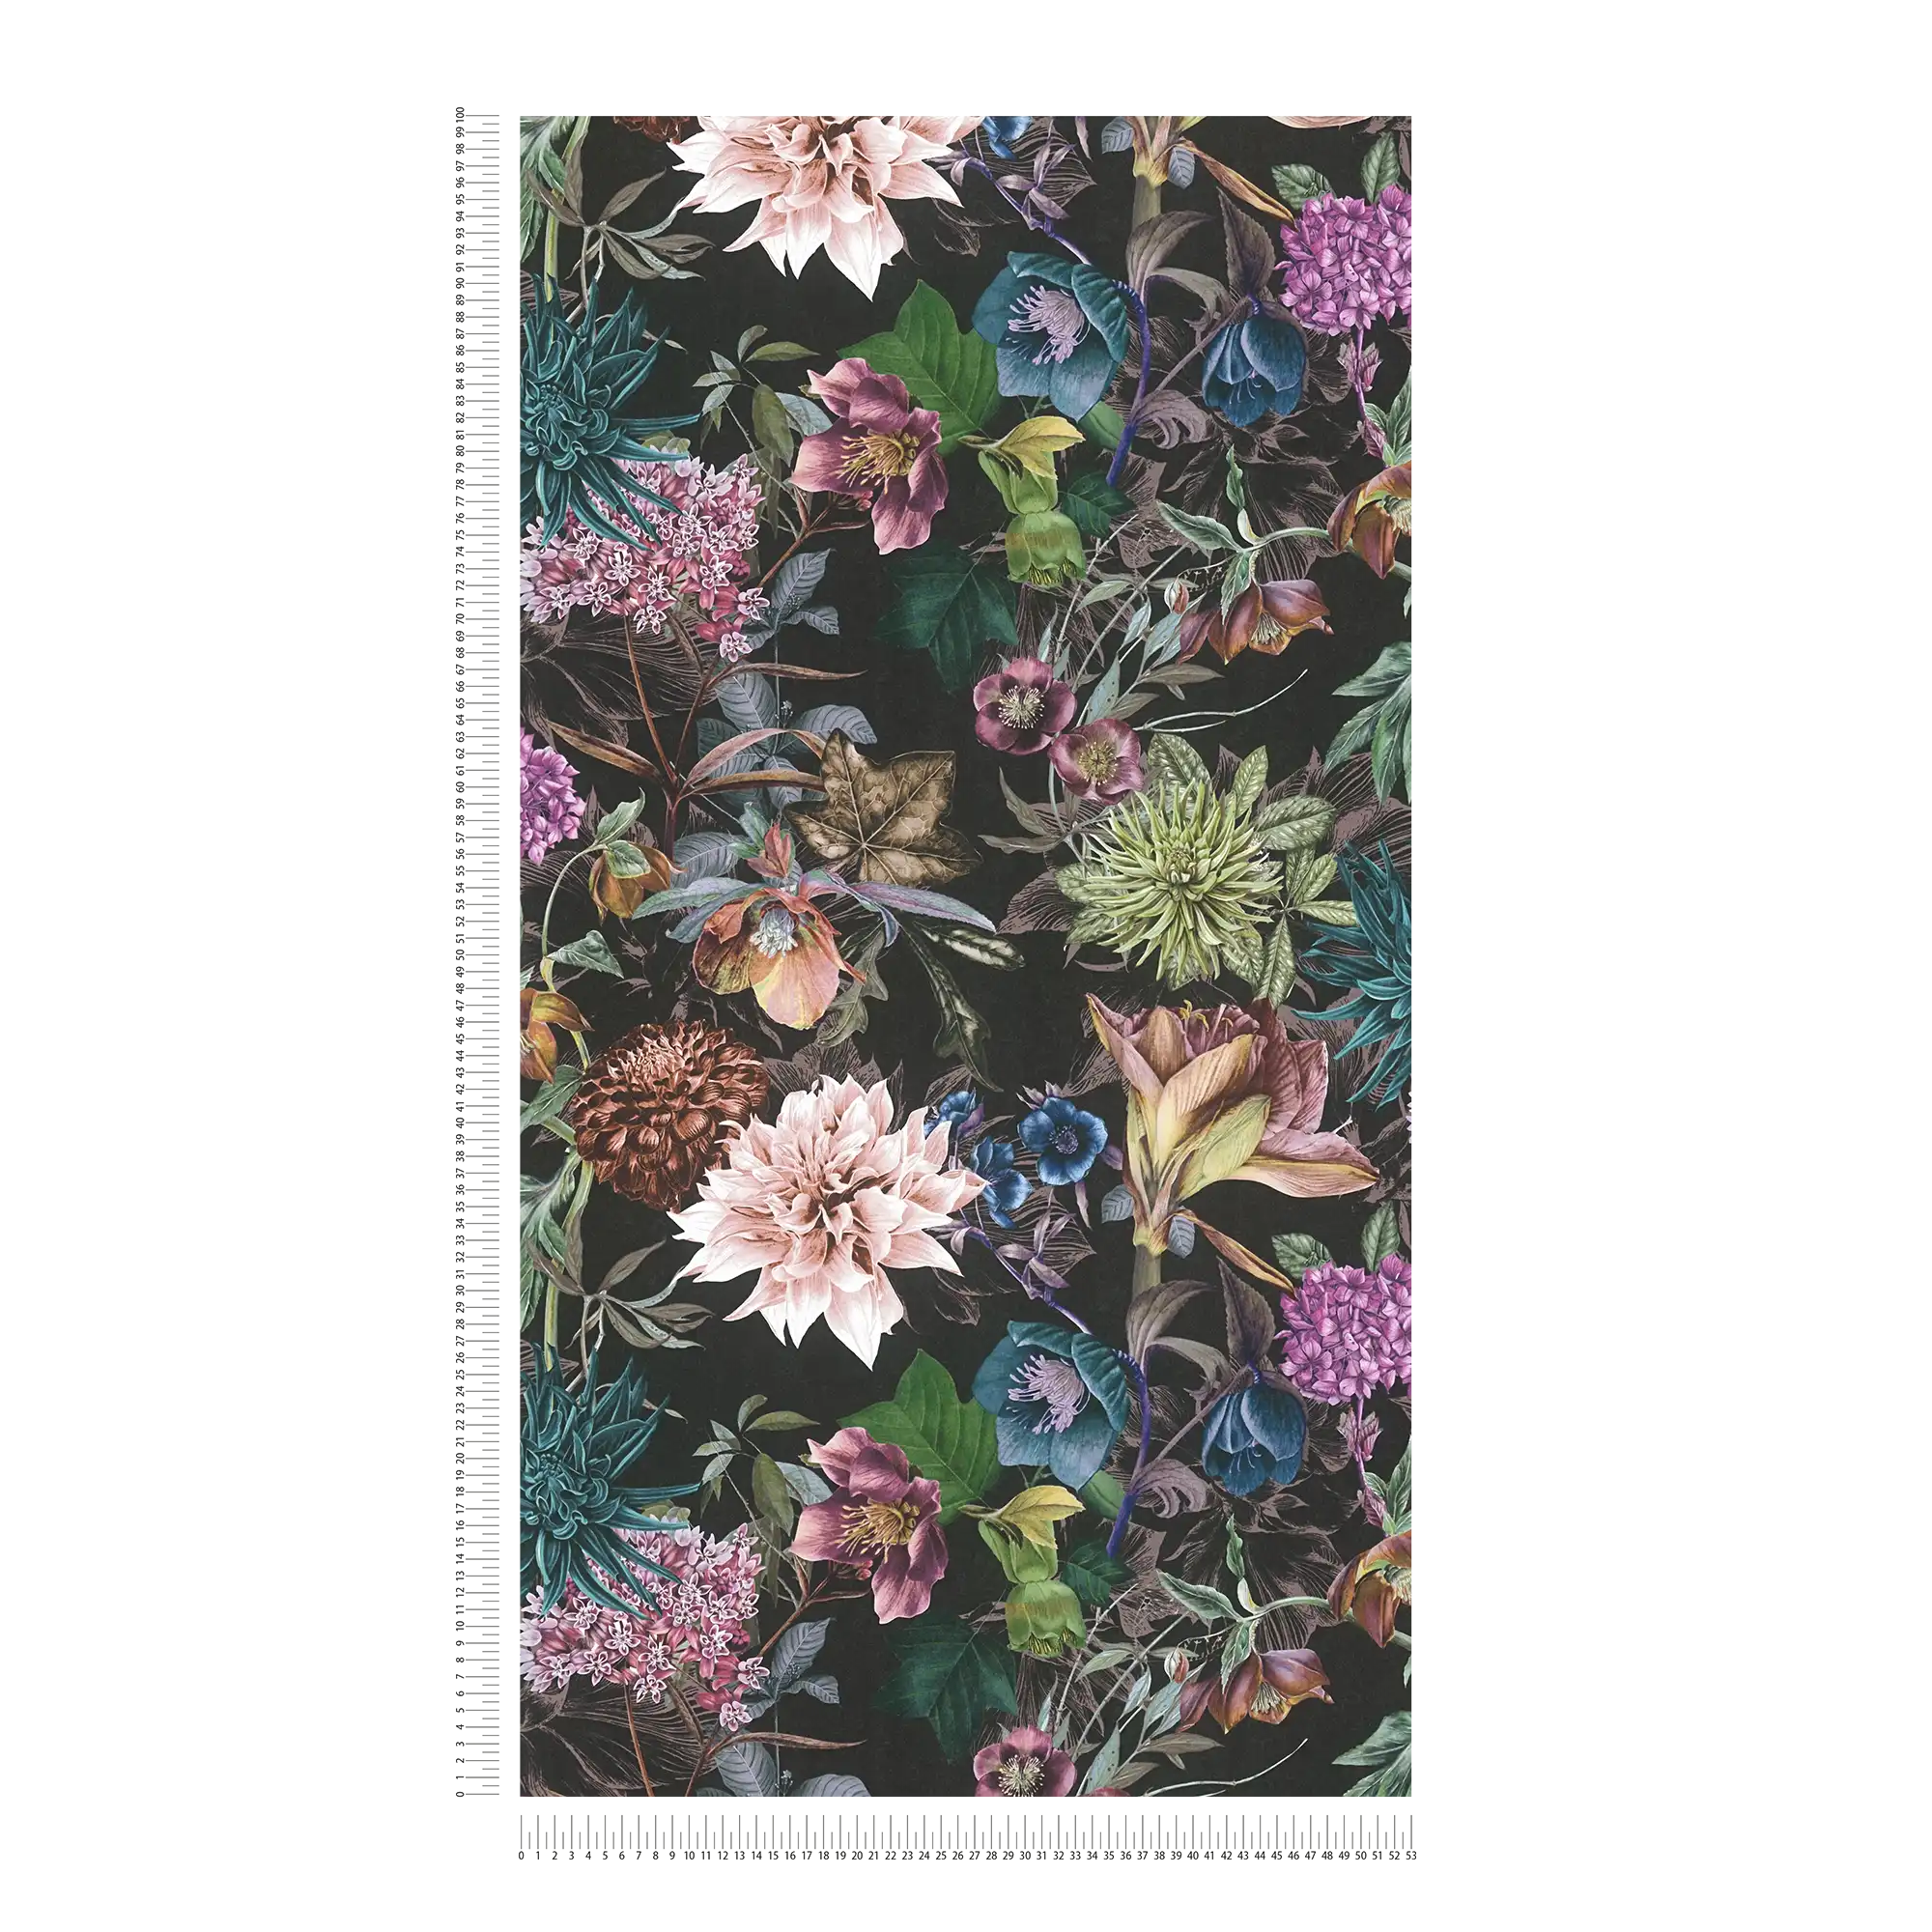             Bloemenbehang met zwarte achtergrond - kleurrijk, zwart
        